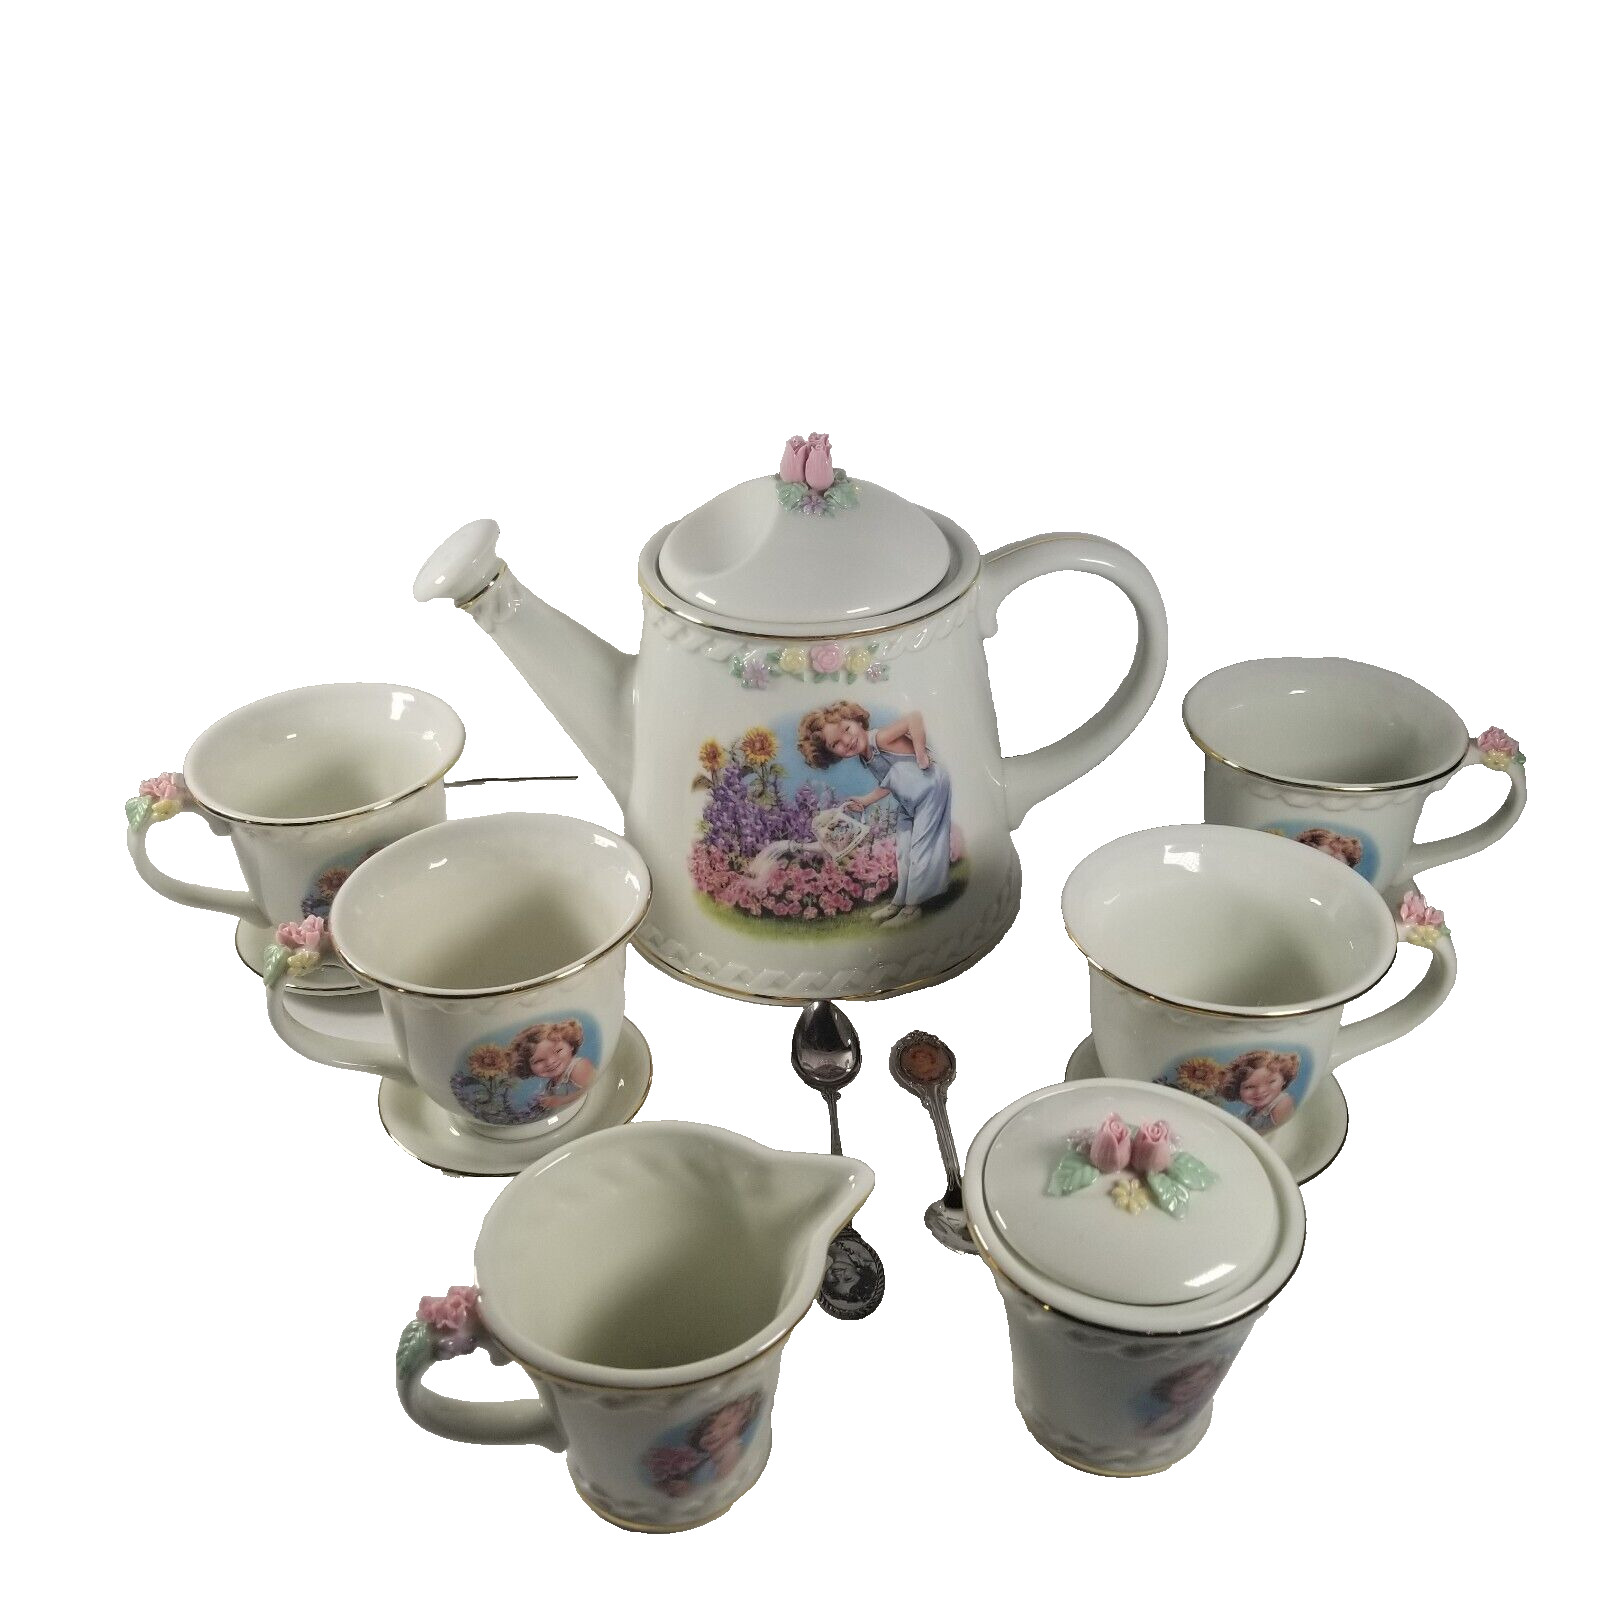 Vintage 13 pc Danbury Mint Shirley Temple Tea Set Gold Trim w/cups & saucers